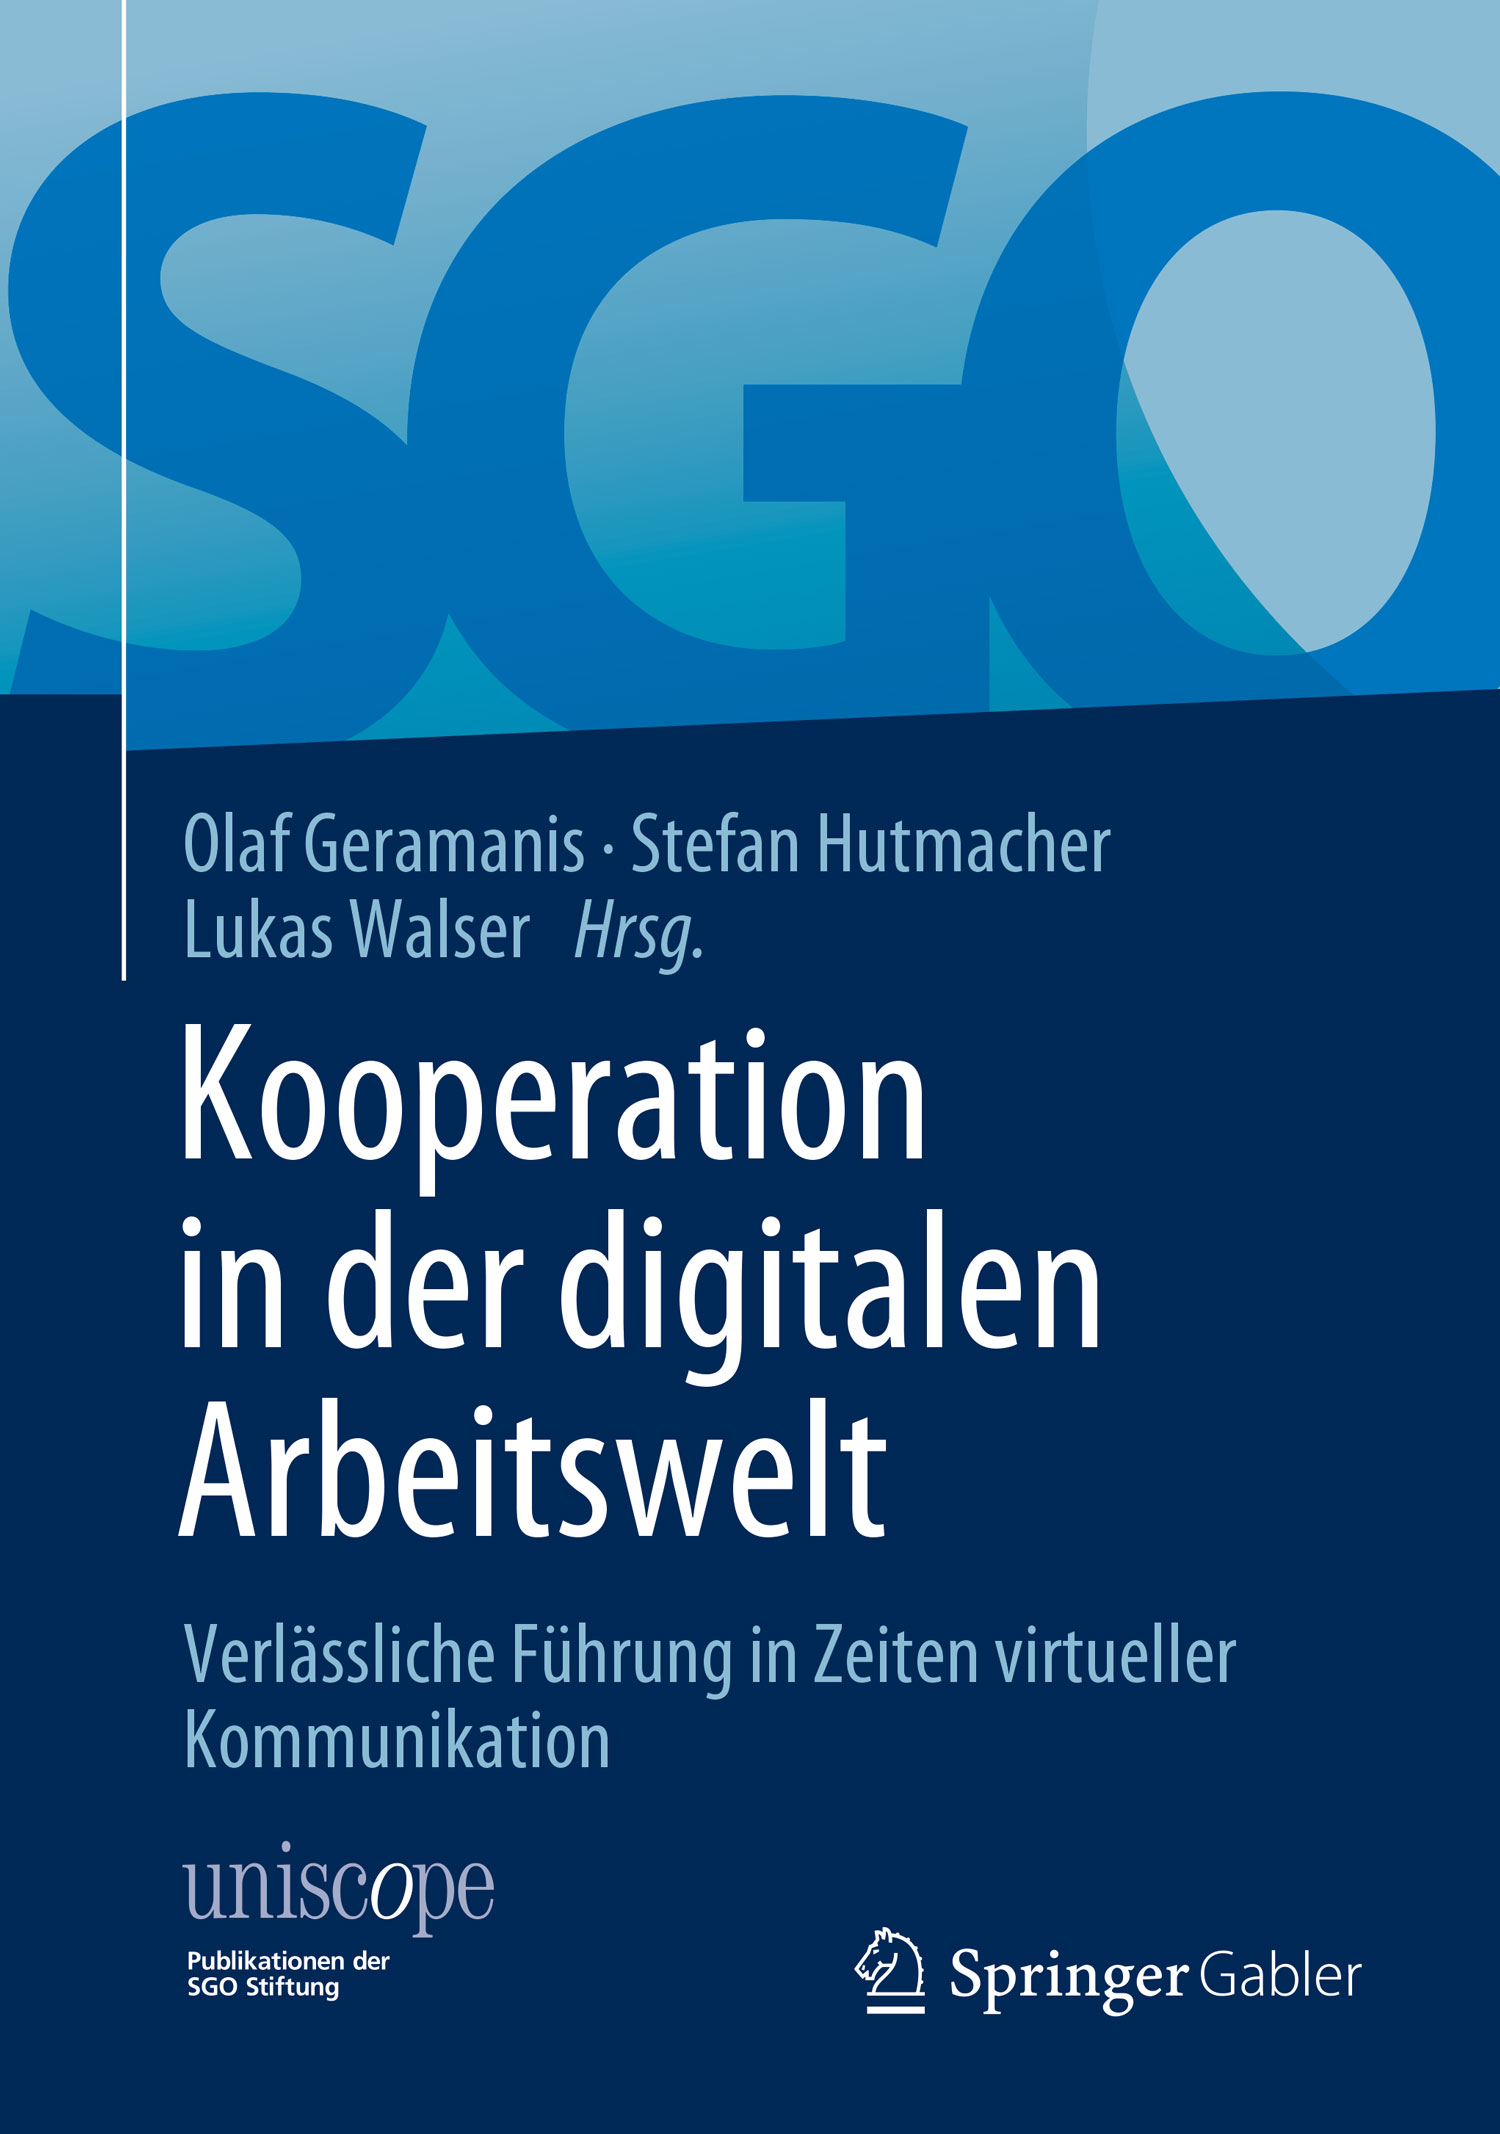 Buchcover von "Kooperation in der digitalen Arbeitswelt"